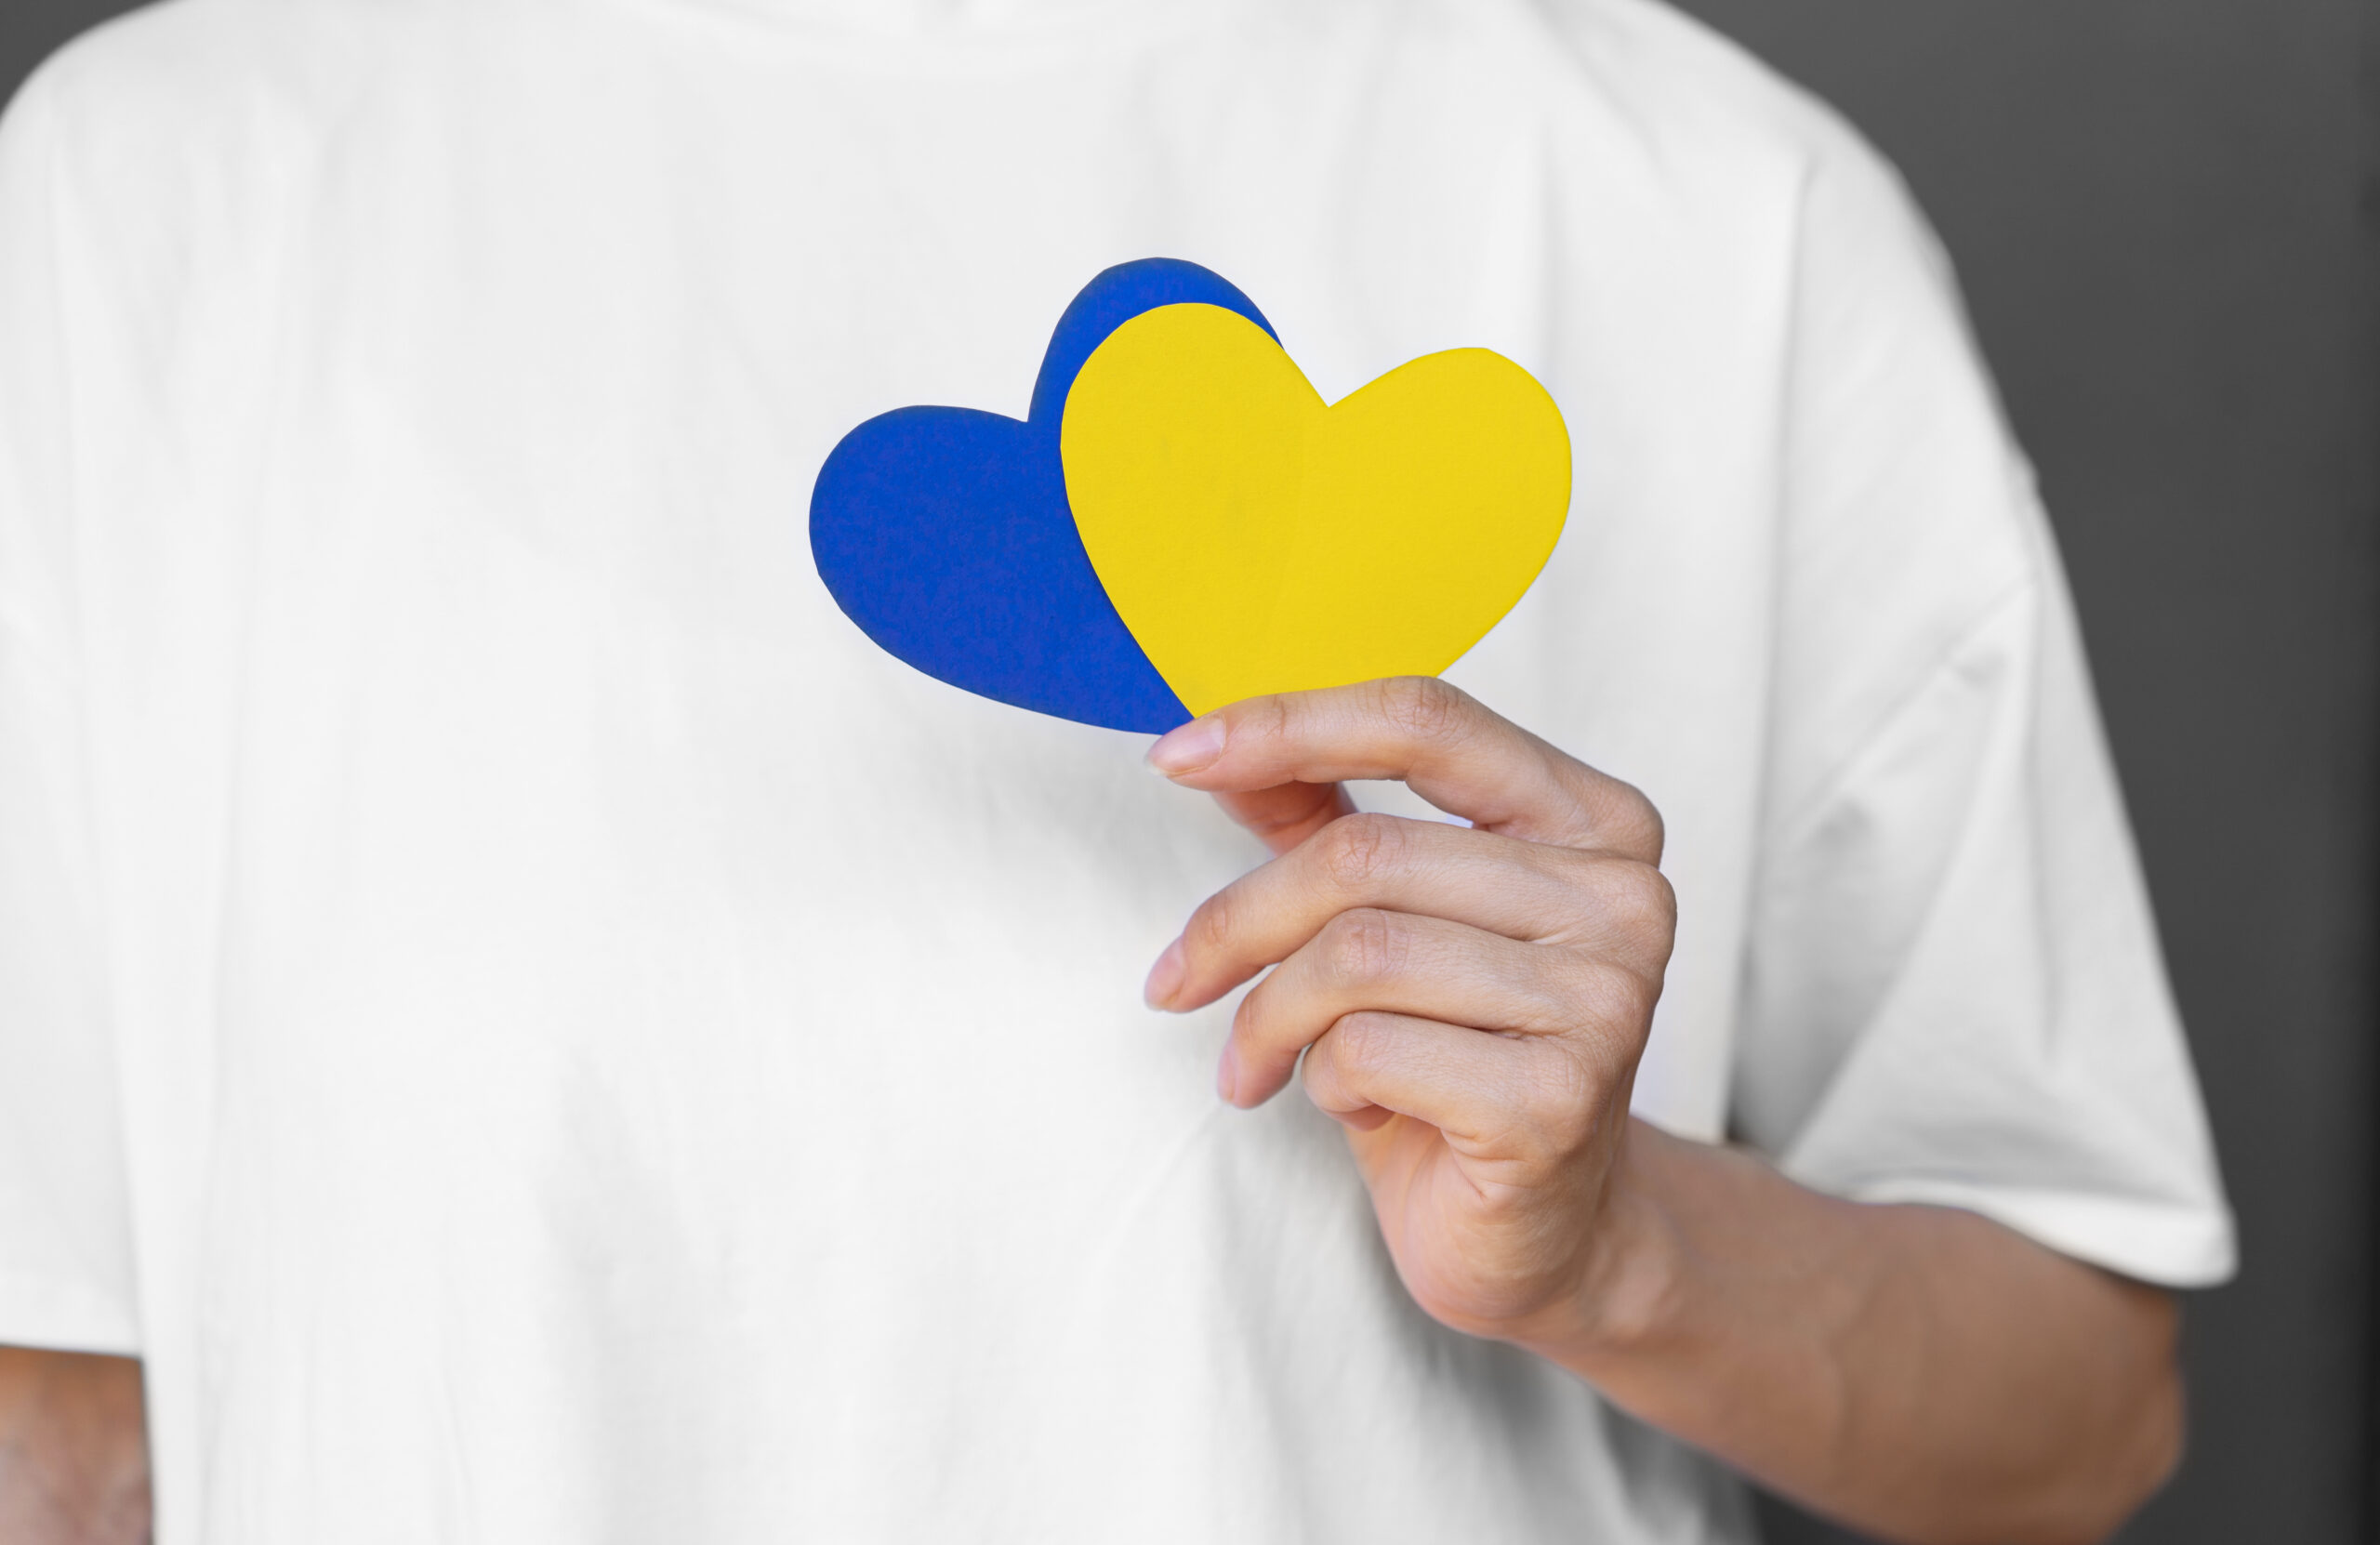 Zbliżenie na dłoń trzymającą 2 serca z papieru w kolorze żółtym i niebieskiem na tle białej koszulki